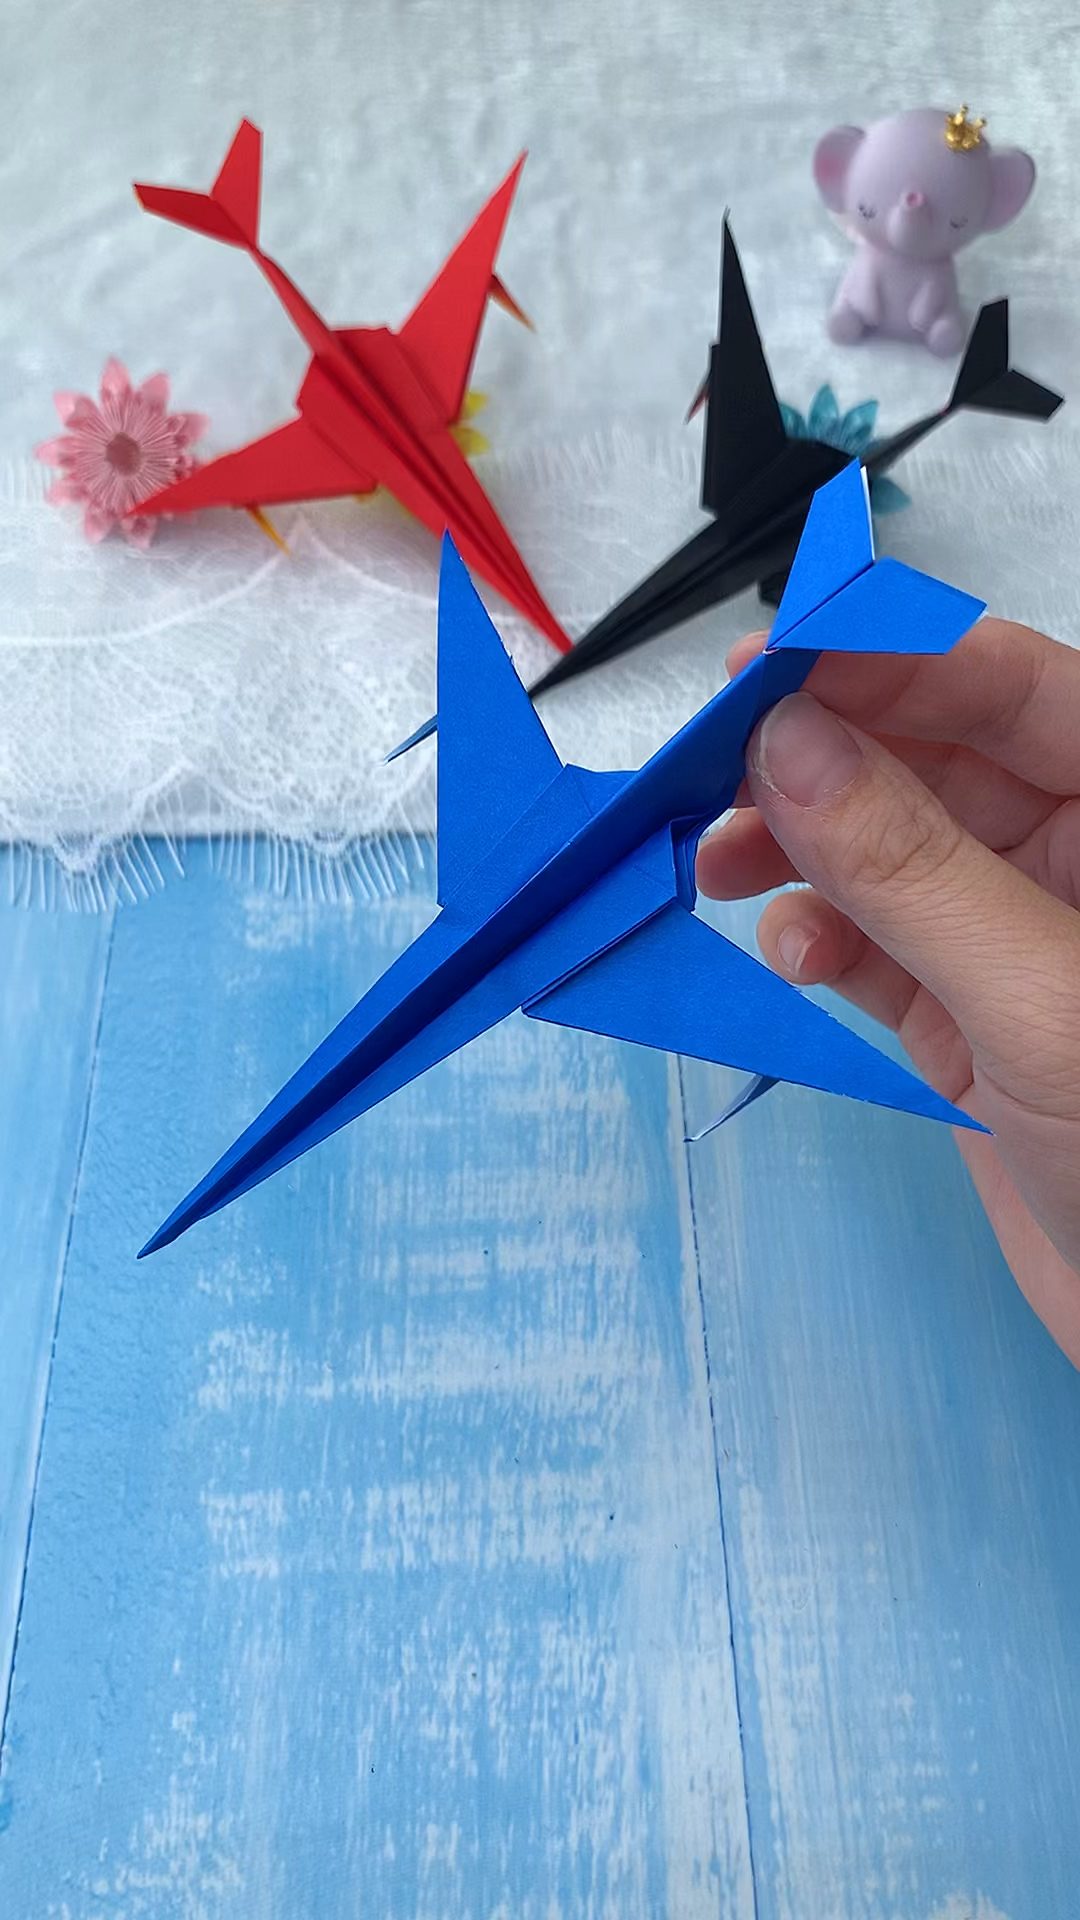 超级酷的一款纸飞机一张纸就能折出来你小时候有折过这样的纸飞机吗